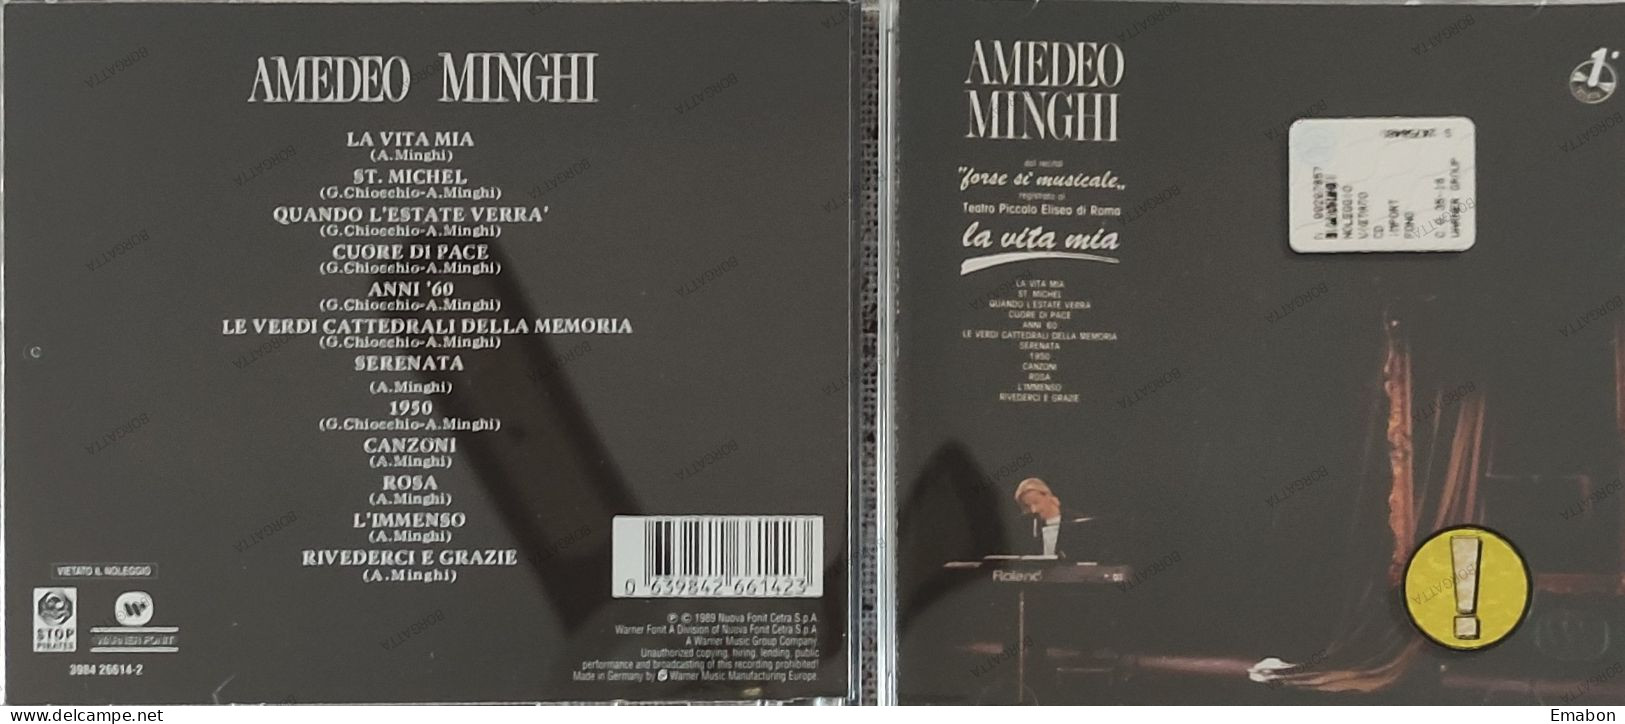 BORGATTA - ITALIANA  - Cd AMEDEO MINGHI - LA VITA MIA - NUOVA FONIT CETRA 1989 -  USATO In Buono Stato - Sonstige - Italienische Musik